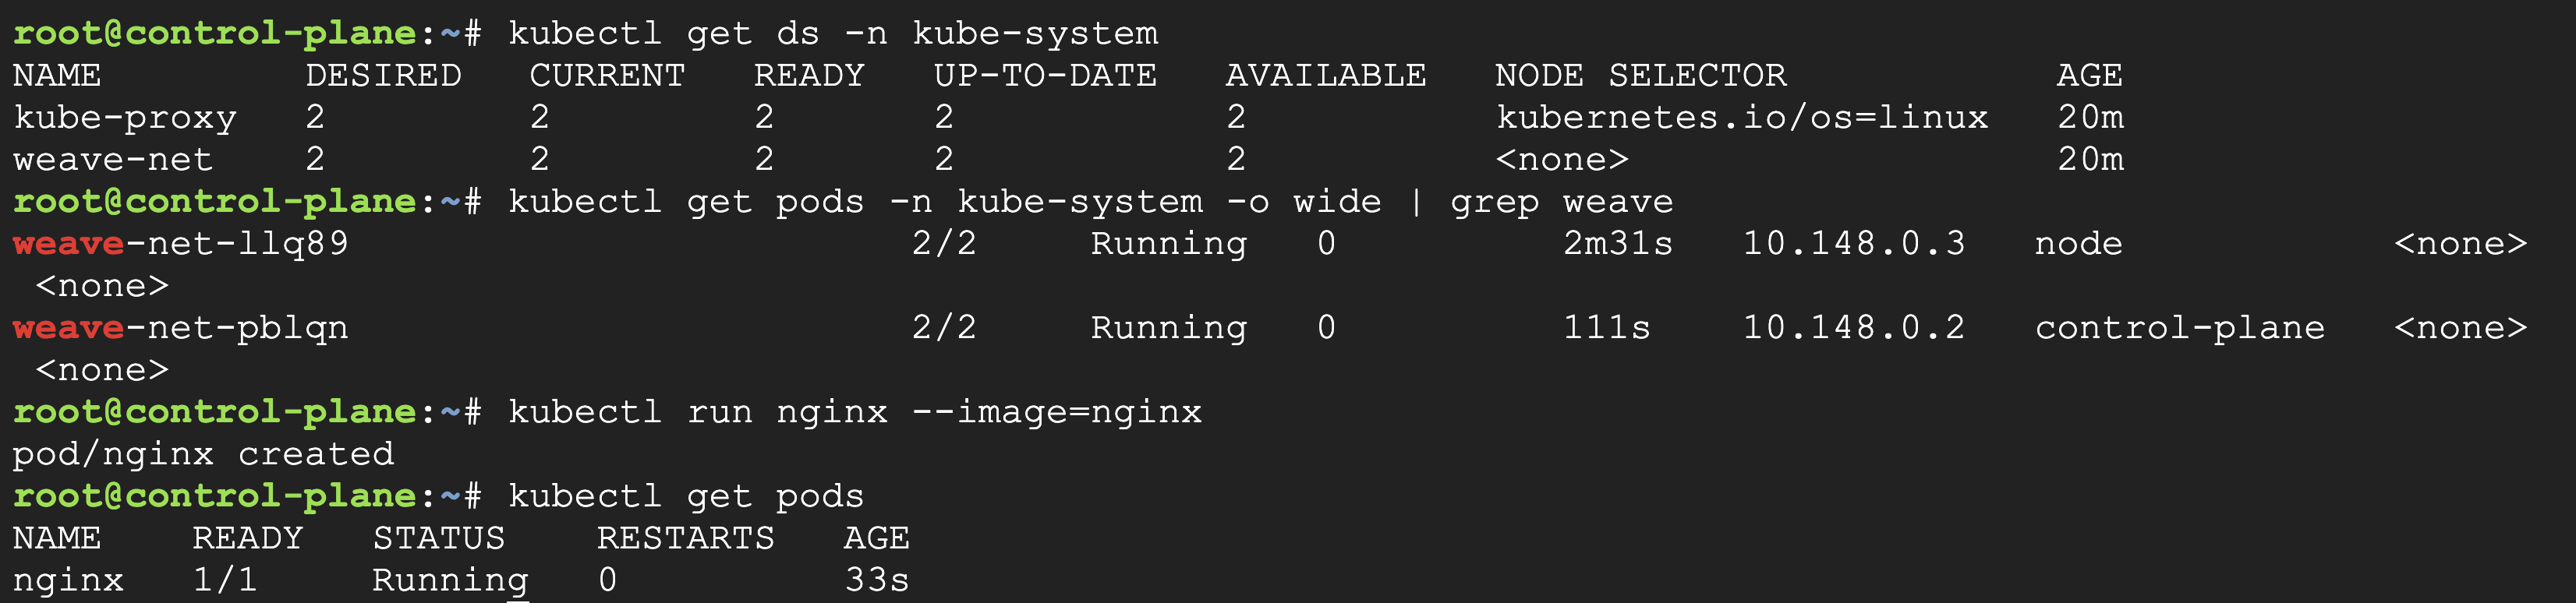 Pod running on node